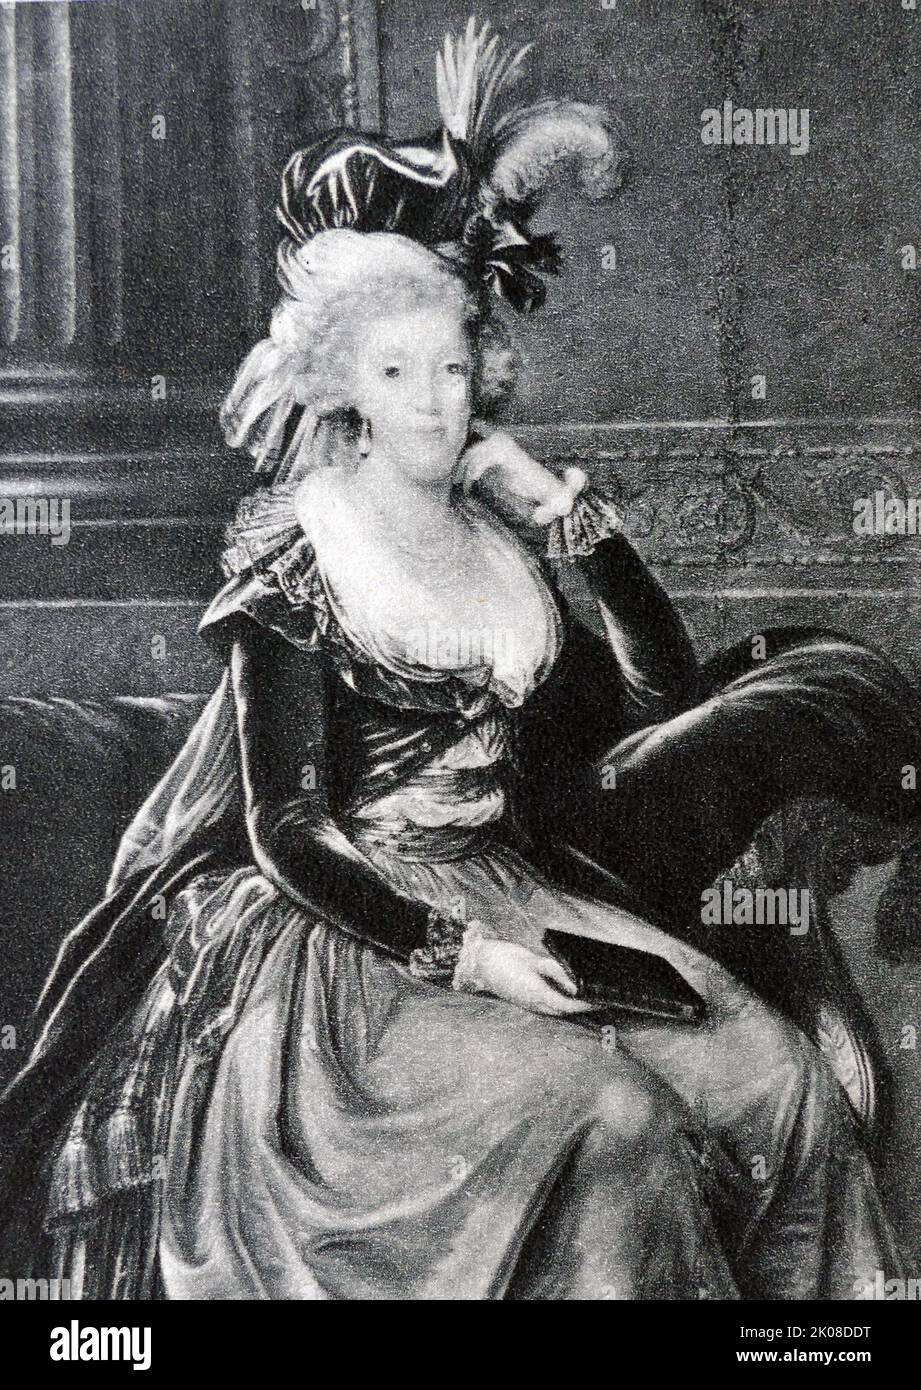 Marie-Charlotte Louise Joseph Jeanne-Antoinette d'Autriche, connue sous le nom de Marie-Caroline (1752-1814) après son mariage, était une archiduchesse d'Autriche qui devint la reine de Naples et de Sicile en 1768 et demeura ainsi jusqu'à ce que Joseph Bonaparte prenne le pouvoir en 1806. Elisabeth Louise Vigee le Brun (16 avril 1755 - 30 mars 1842), également connue sous le nom de Madame le Brun, était une peintre française, surtout des femmes, à la fin de 18th et au début de 19th siècles Banque D'Images